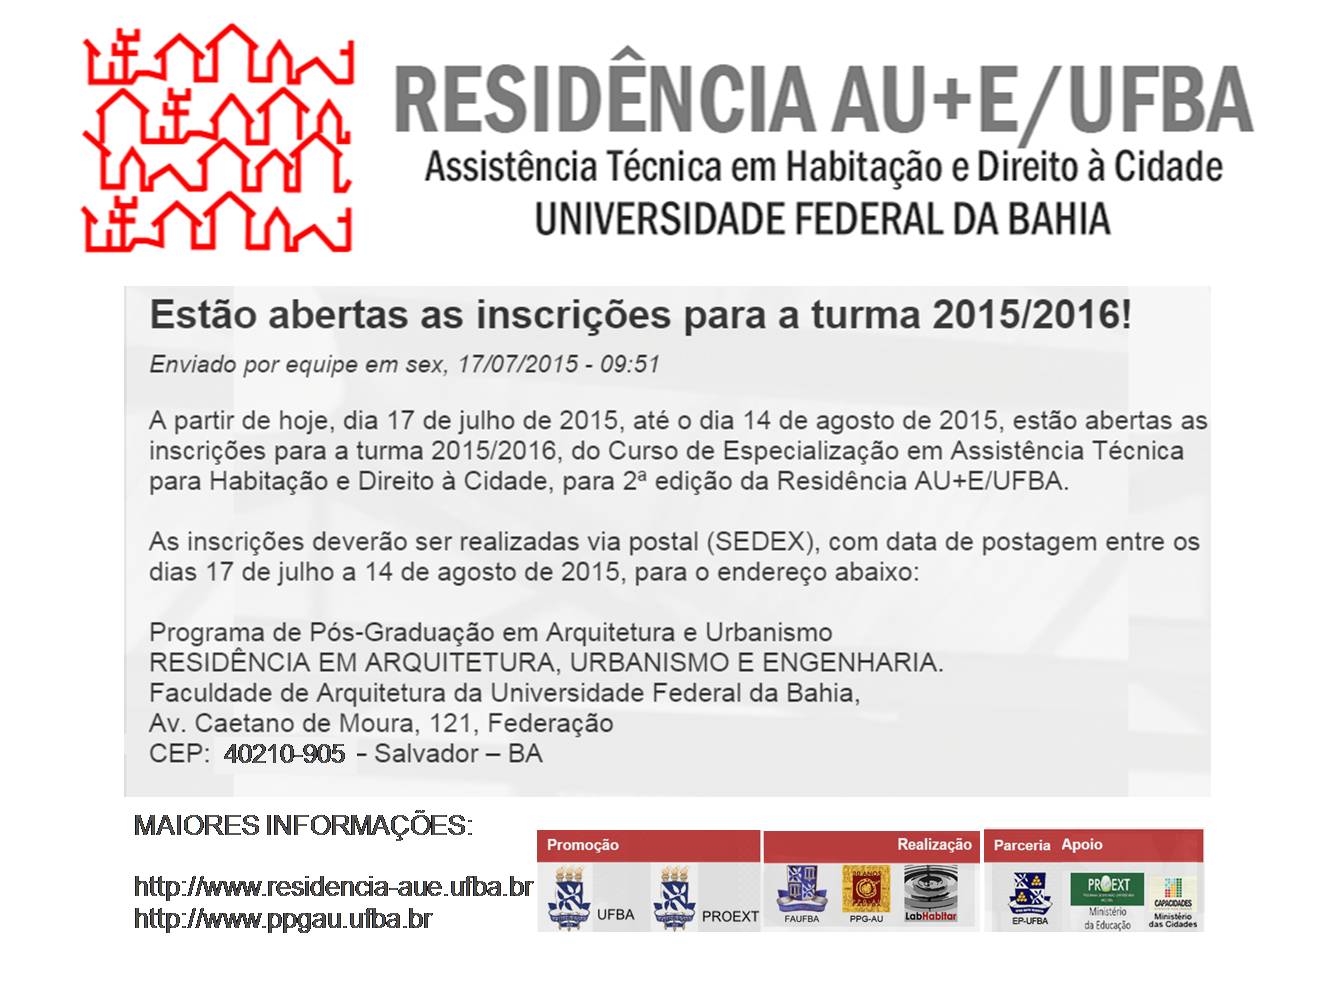 Estão abertas as inscrições para a turma 2015/2016 da Residência AU+E/UFBA! 